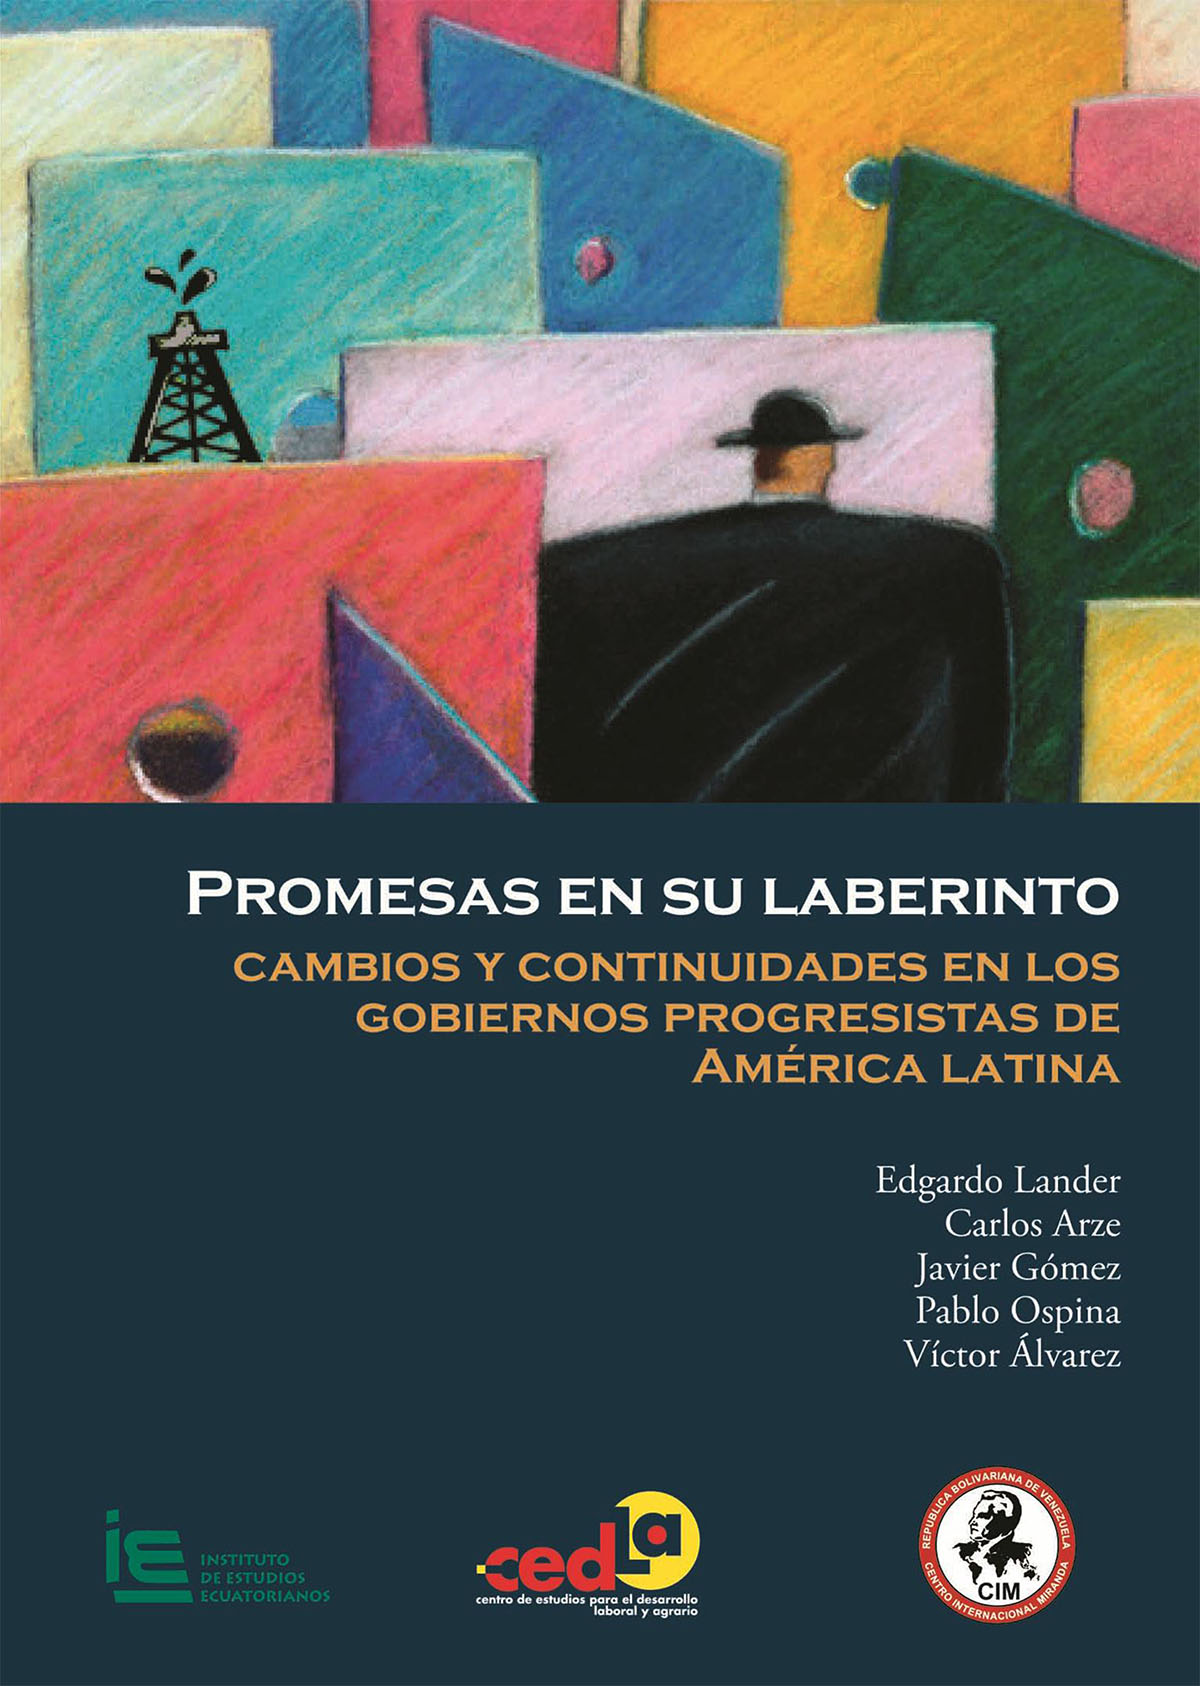 Promesas en su laberinto: cambios y continuidades en los gobiernos progresistas de América Latina